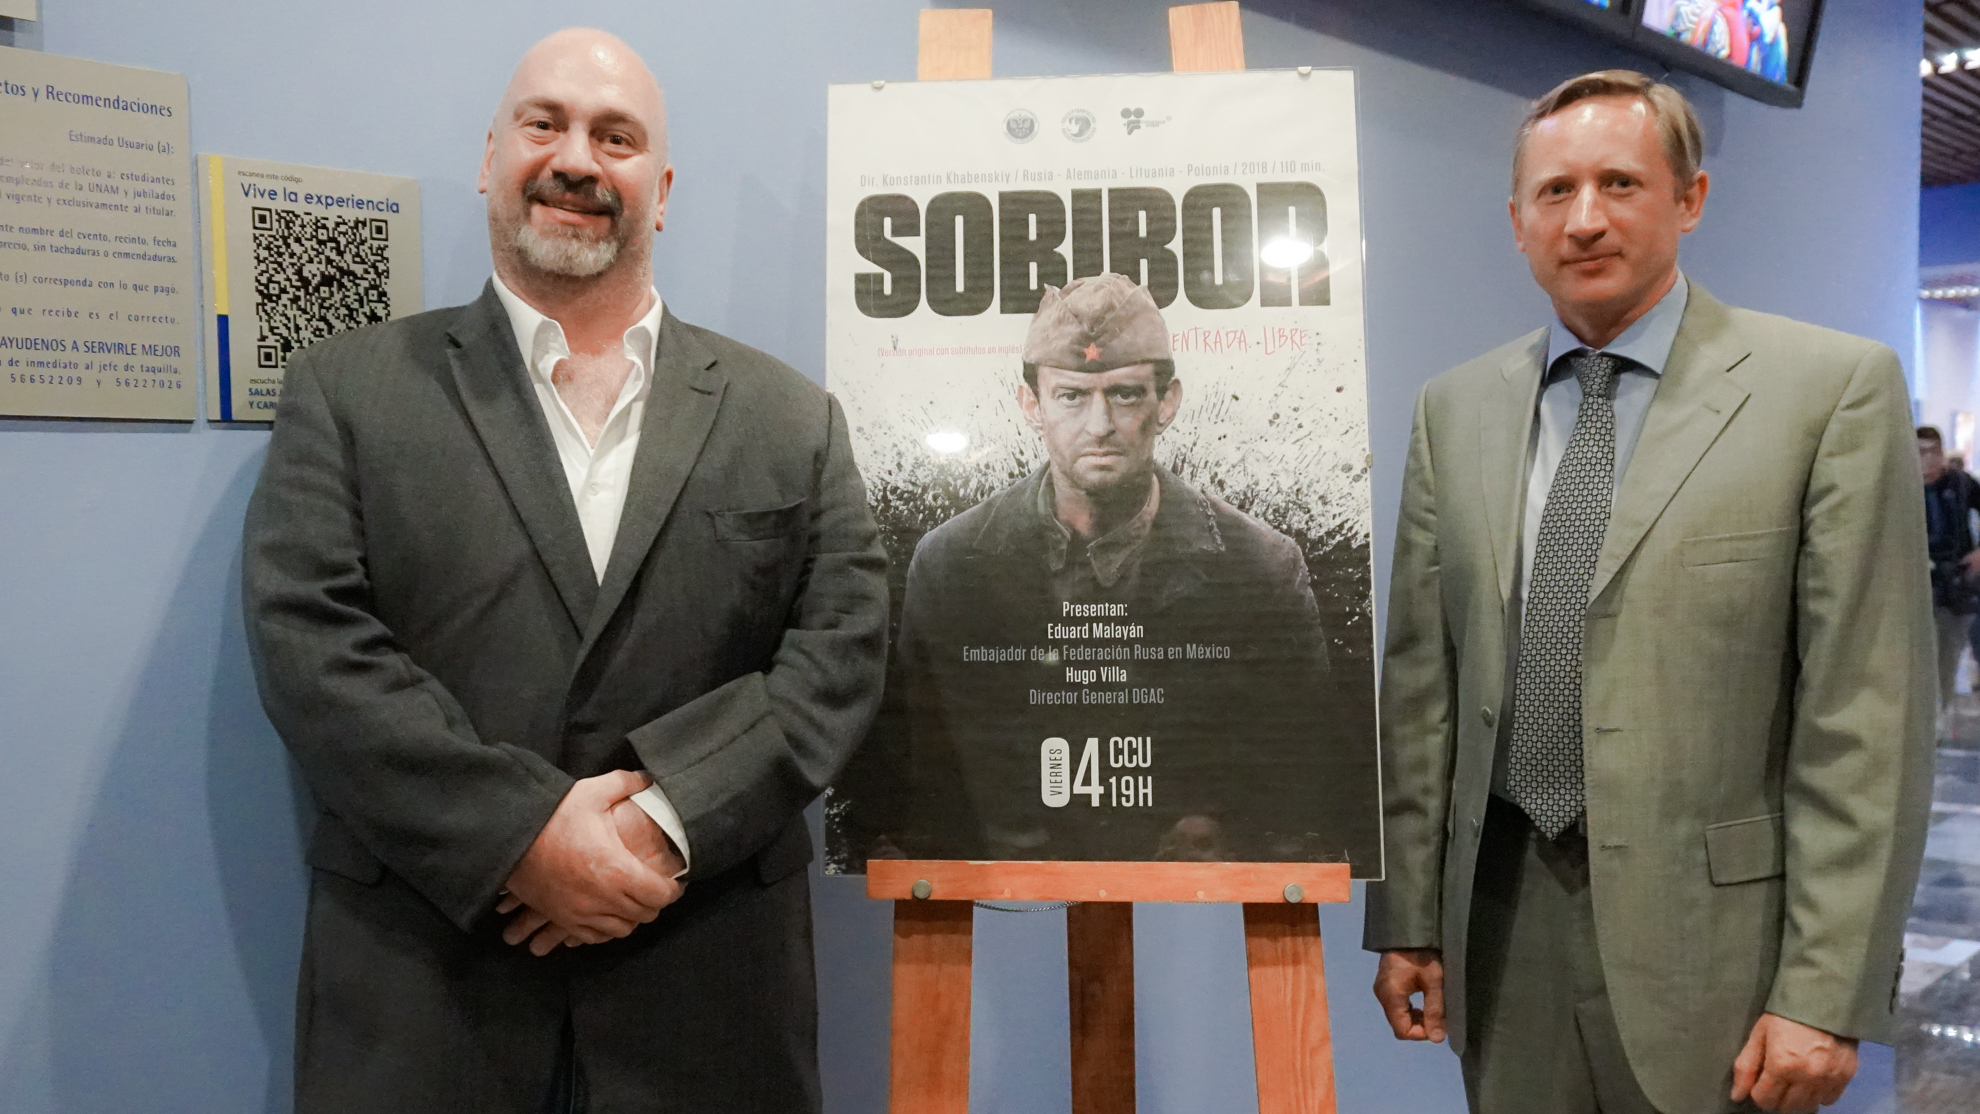 Premiére del filme ‘Sobibor’ en México